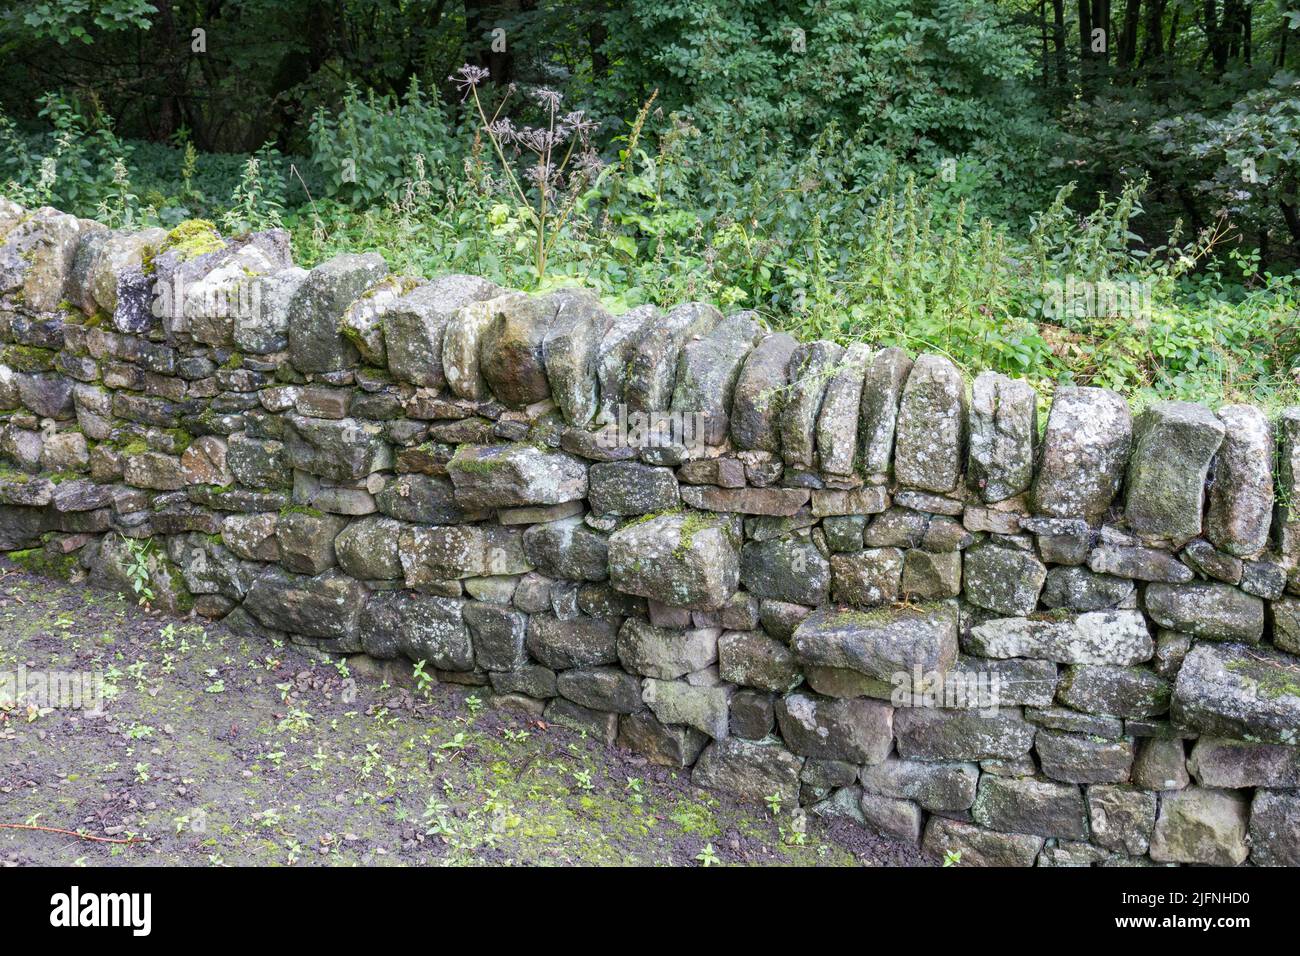 Esempio di un muro di pietra a secco Wensleydale Leyburn (arenaria, pietra calcarea e scisto), parte di una mostra di muratura a secco, Shibden Park, Halifax, Regno Unito. Foto Stock